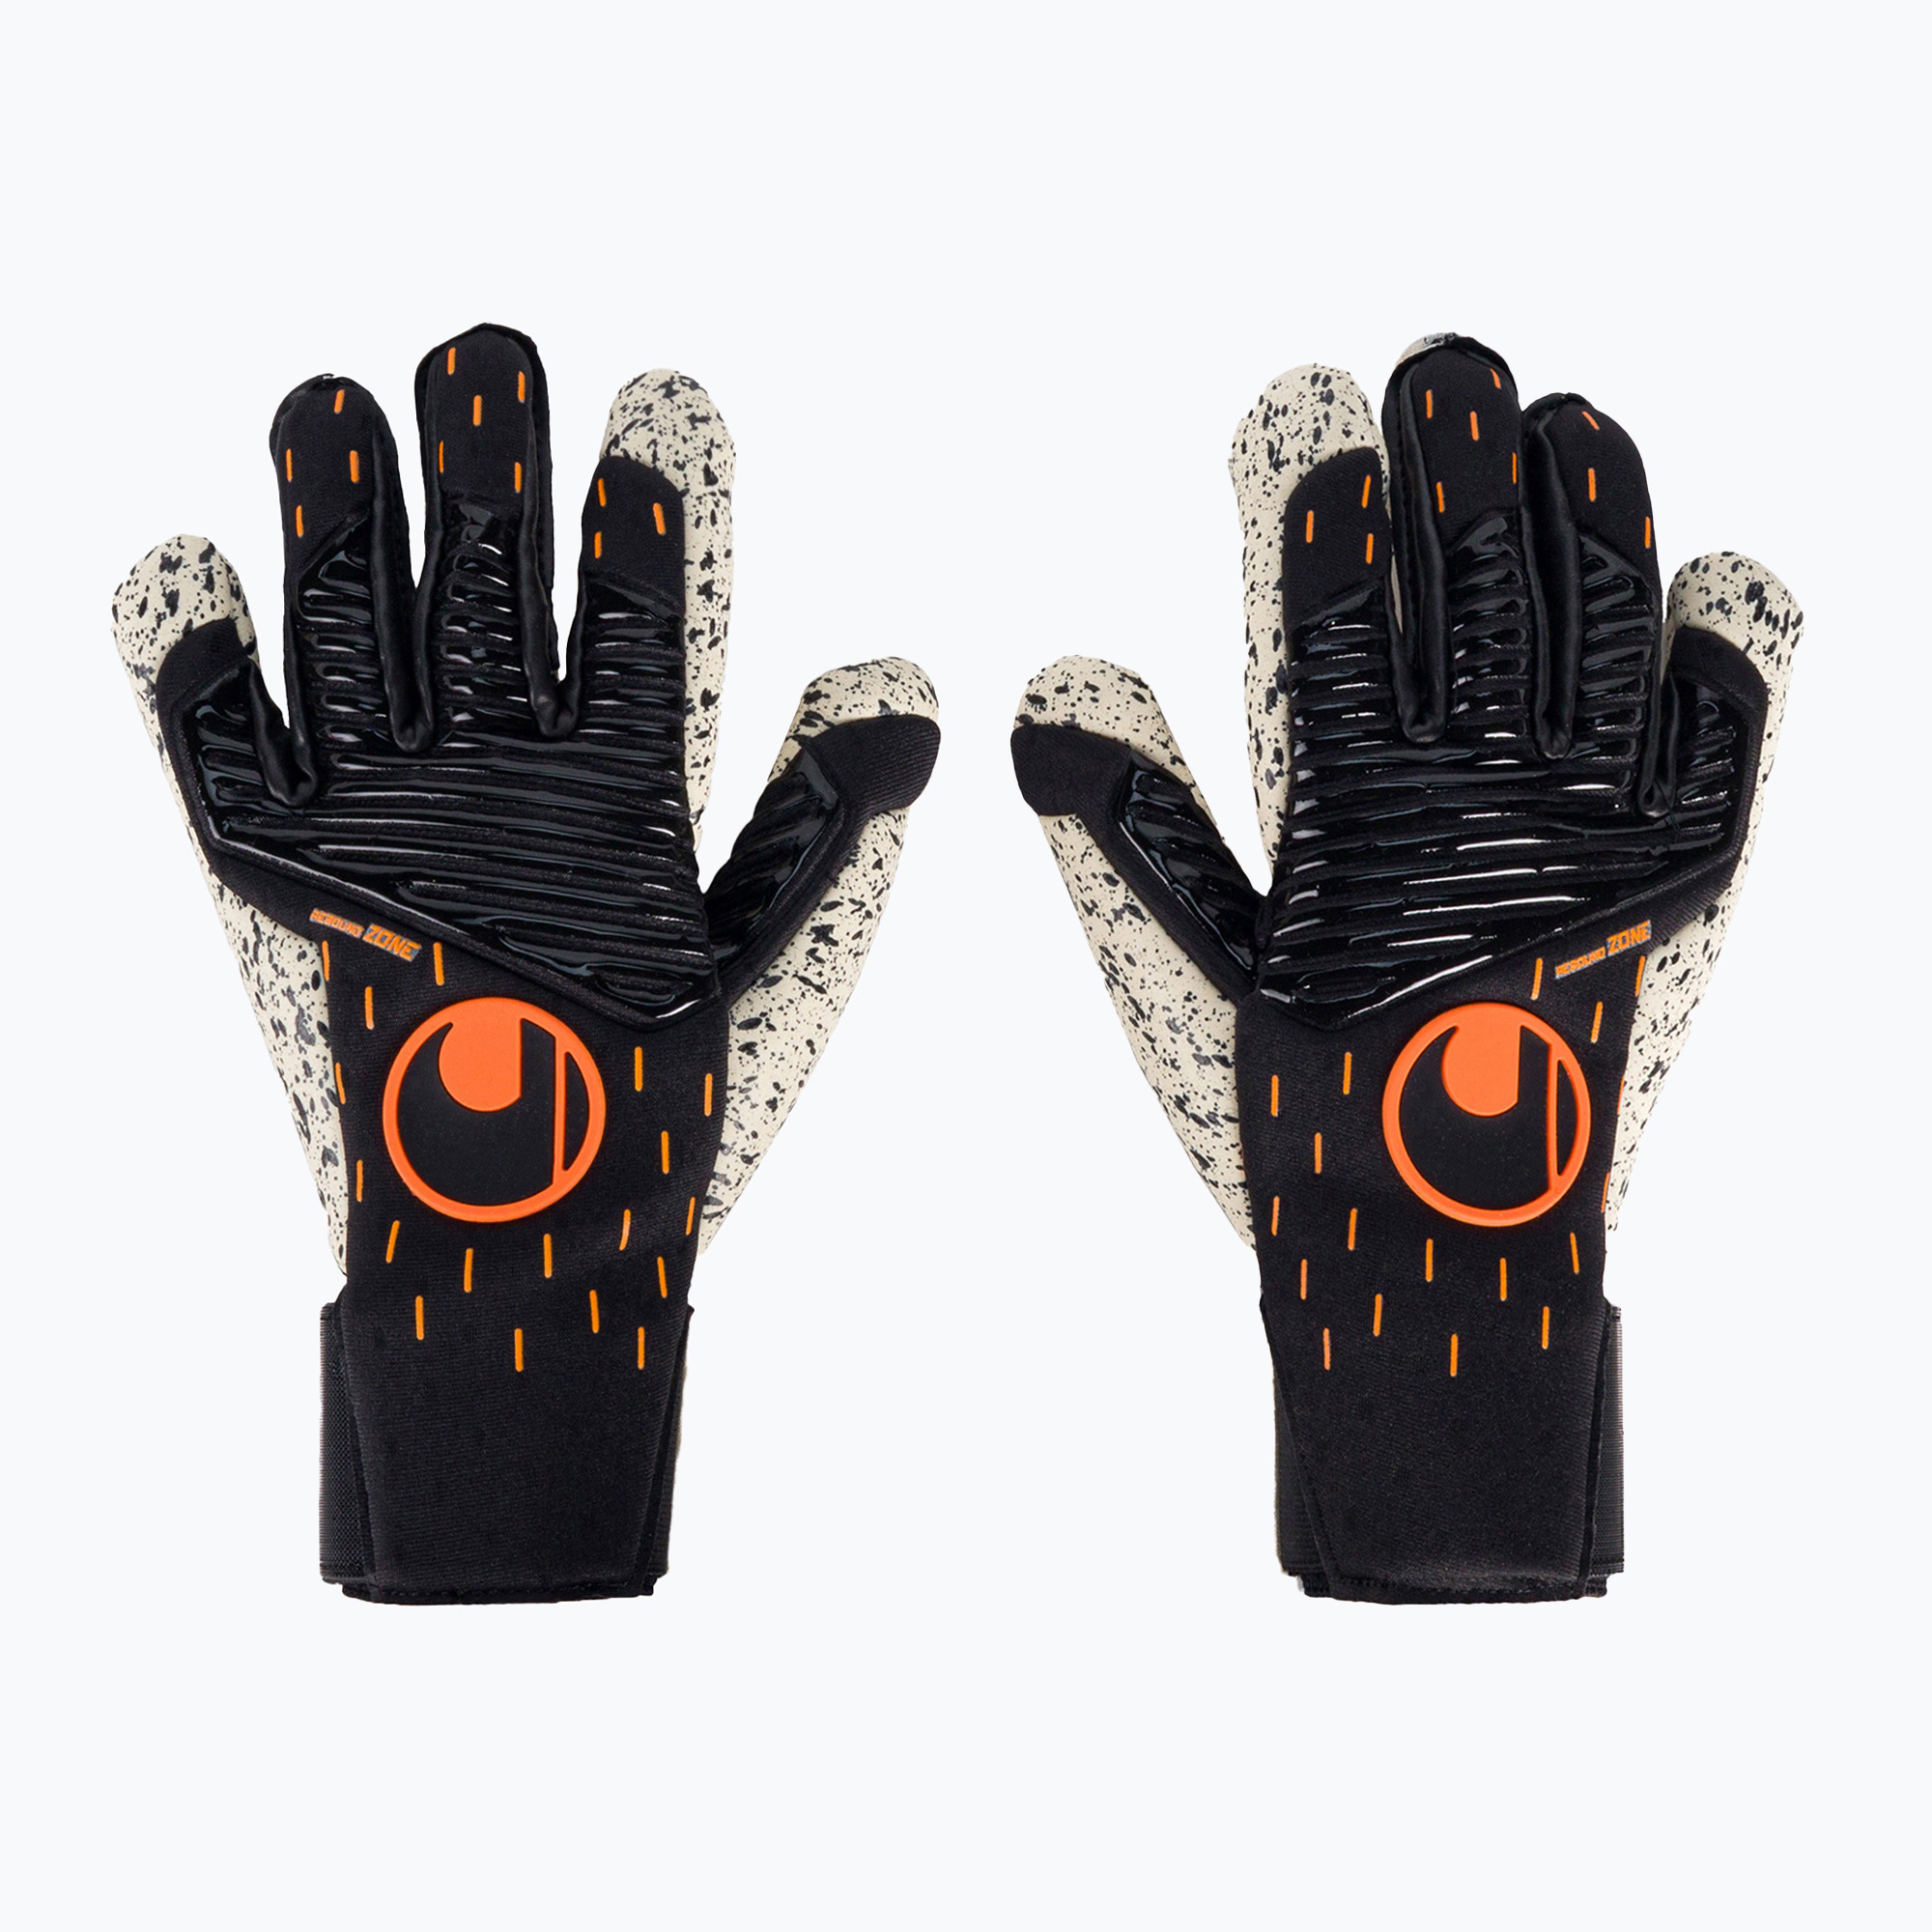 Неморски ръкавици uhlsport Speed Contact Supergrip  black/white 101125801